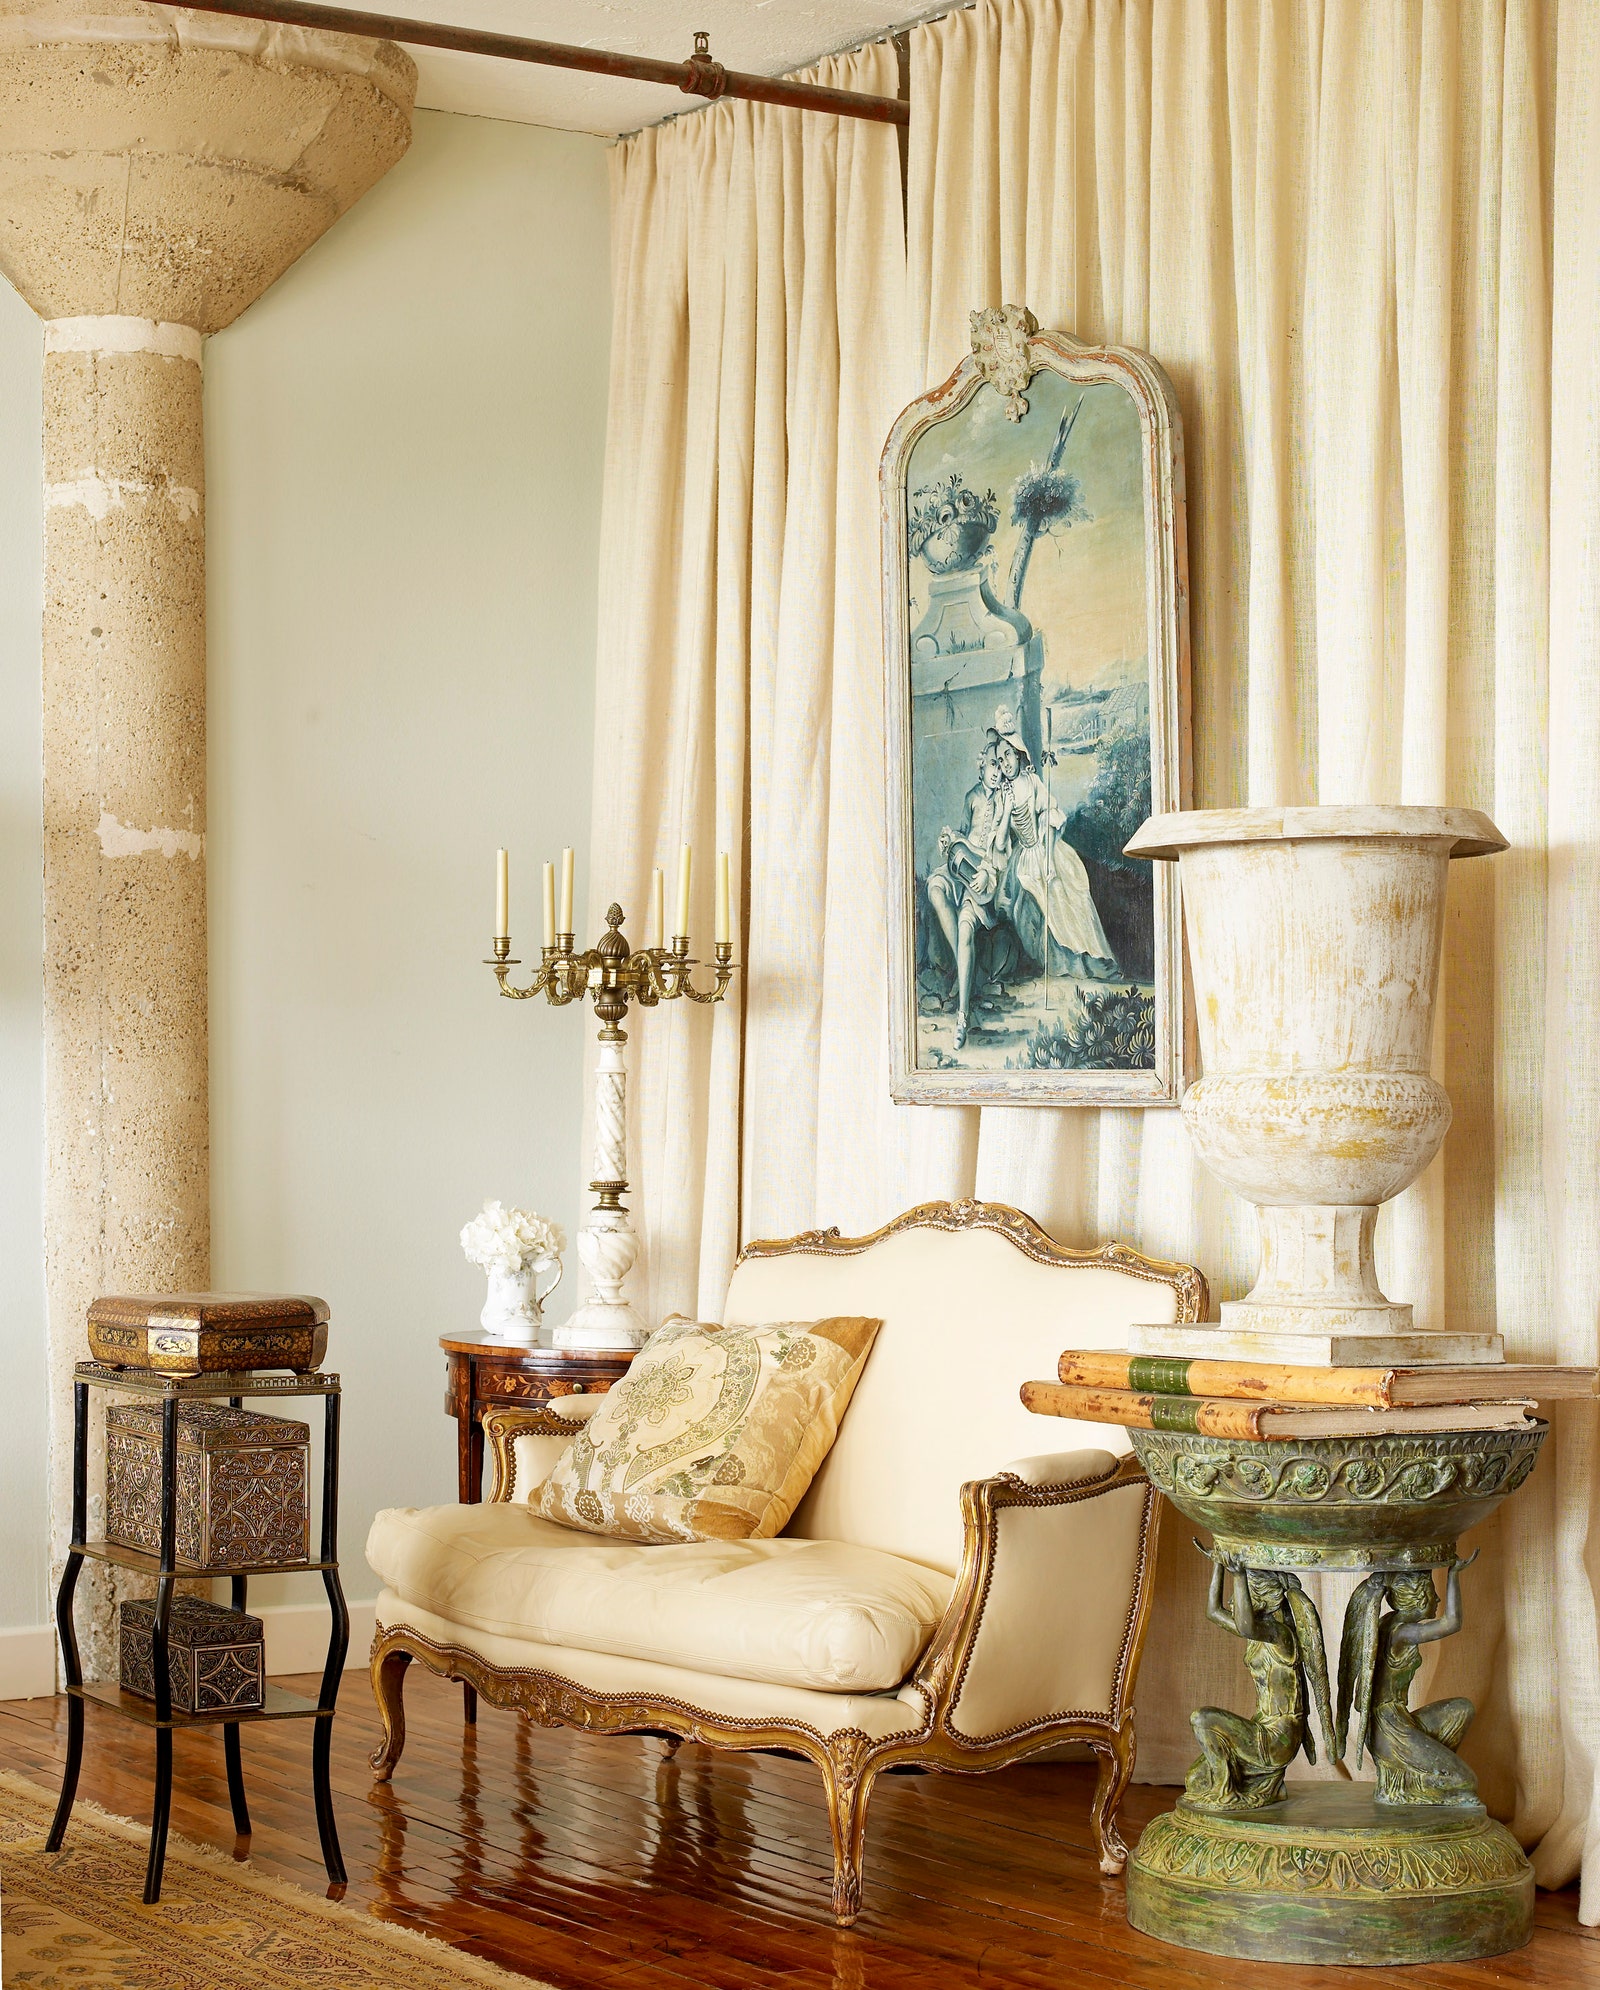 Французский диван XIX века с подушкой из старинной ткани на фоне льняной шторы Ralph Lauren — фрагмент французских обоев...